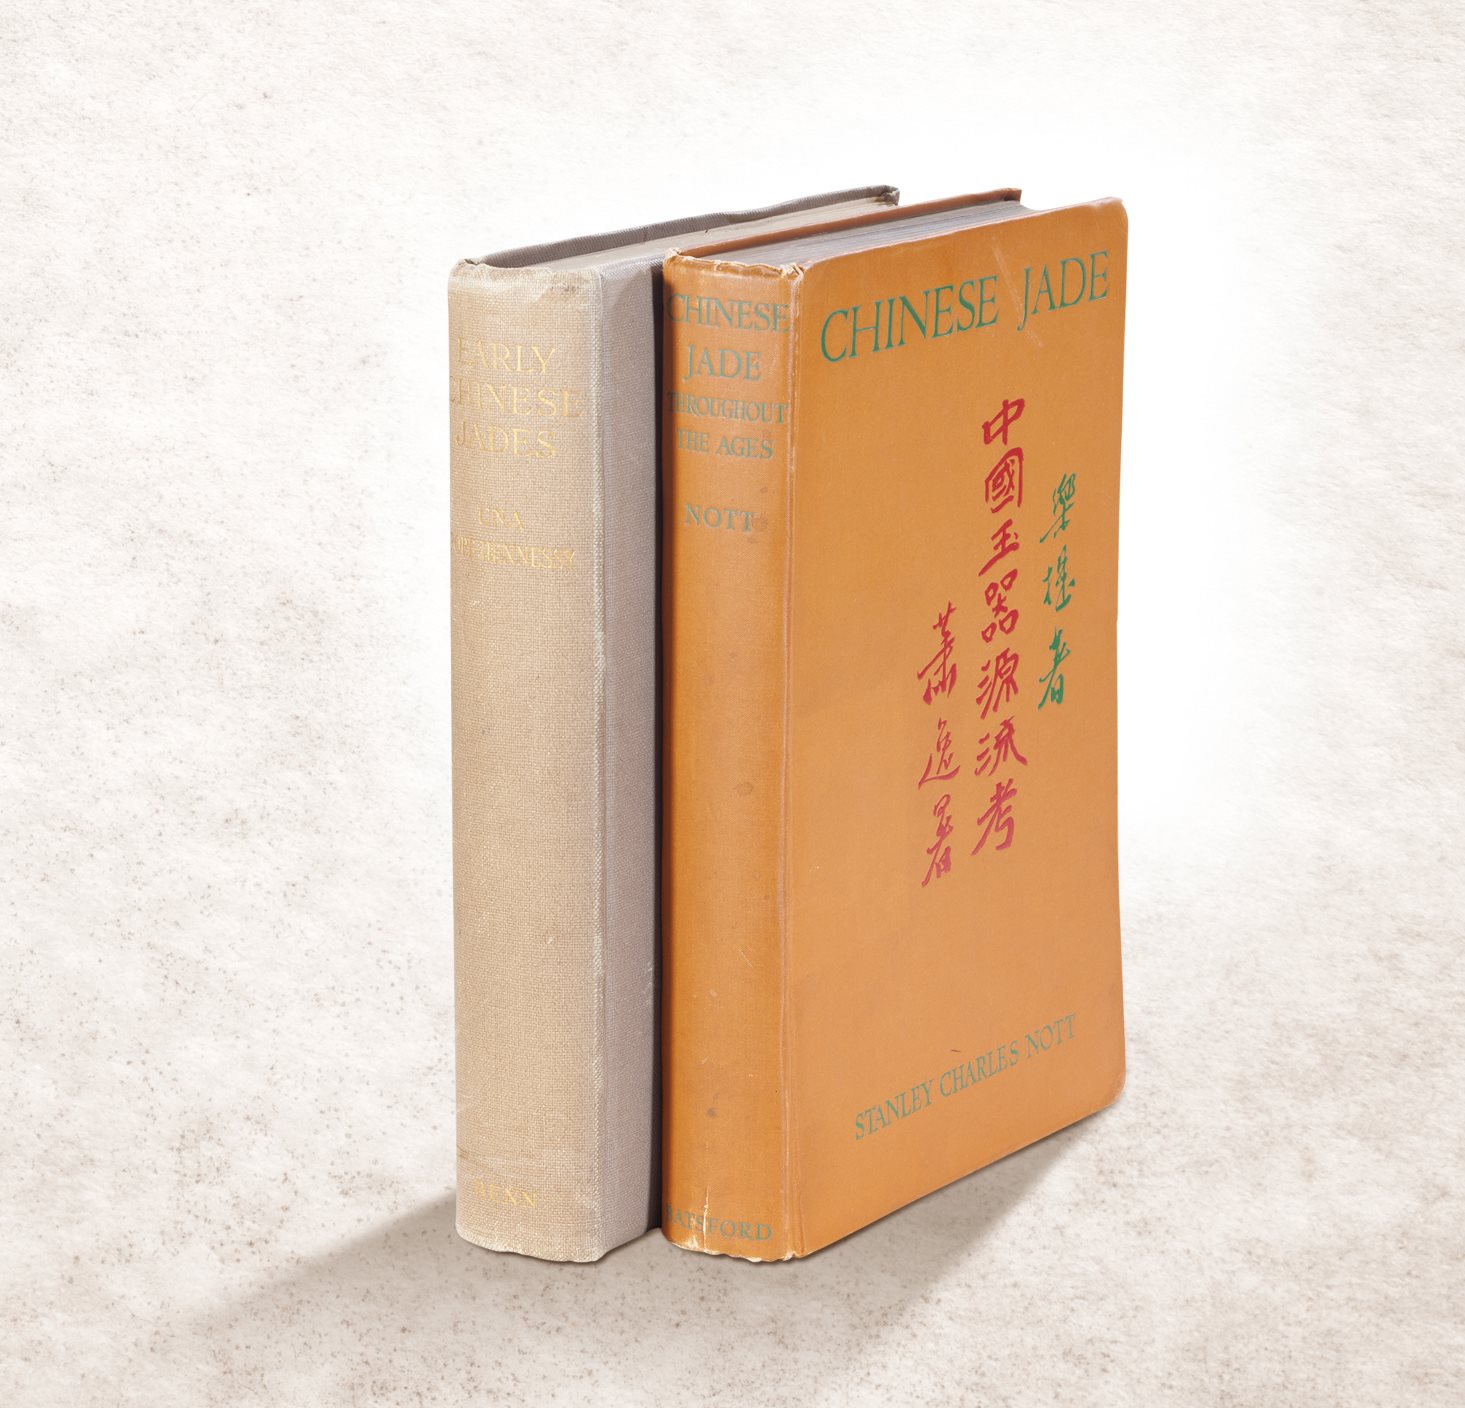 1923年《中国早期玉器》、1936年《中国玉器源流考》两册